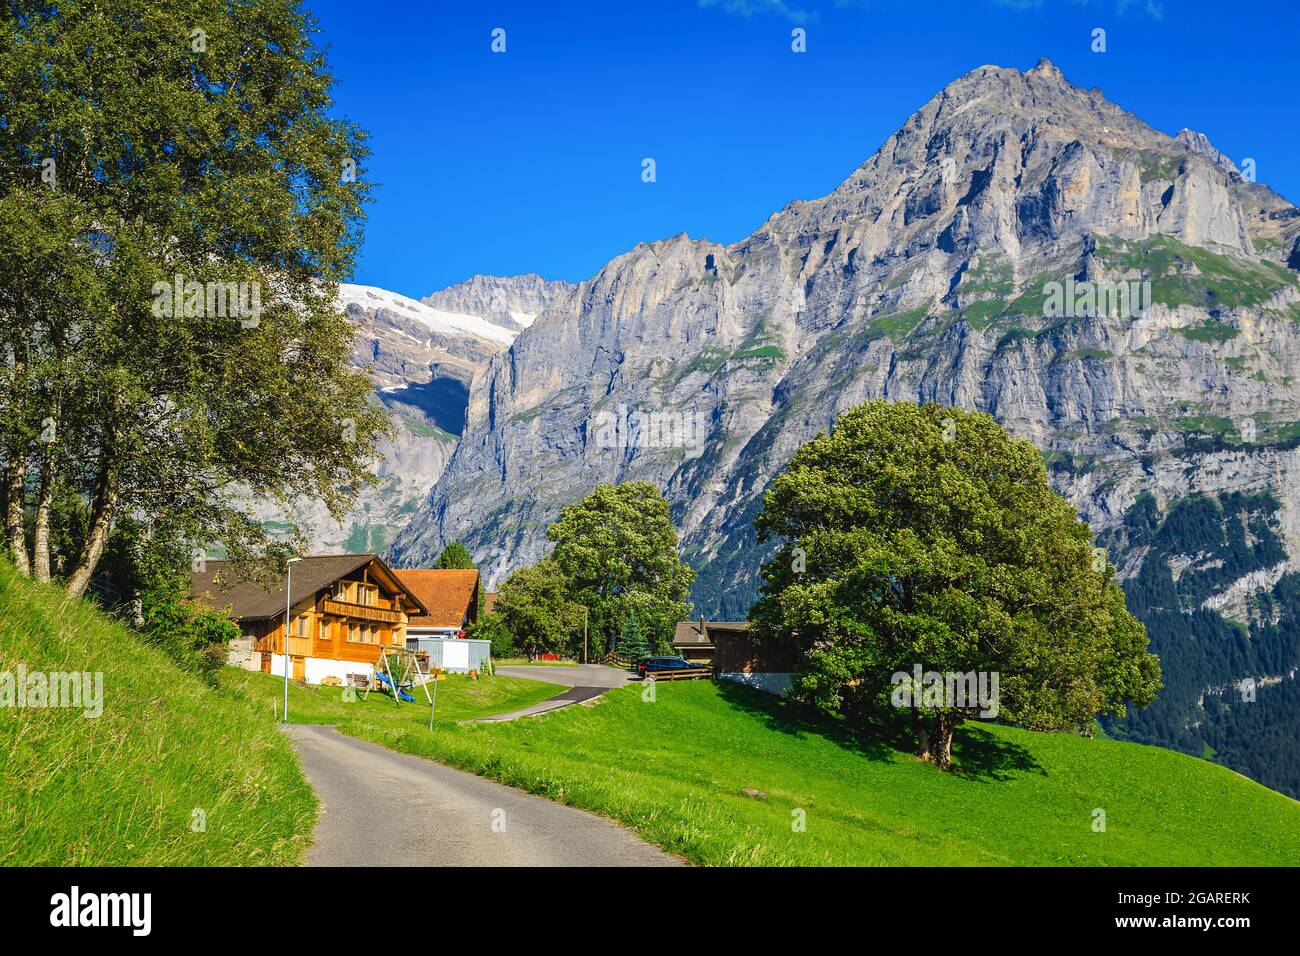 Casas de madera y campos verdes en la pendiente. Carretera rural estrecha en la colina y altas montañas en el fondo, Grindelwald, Oberland bernés, Switzerlan Foto de stock